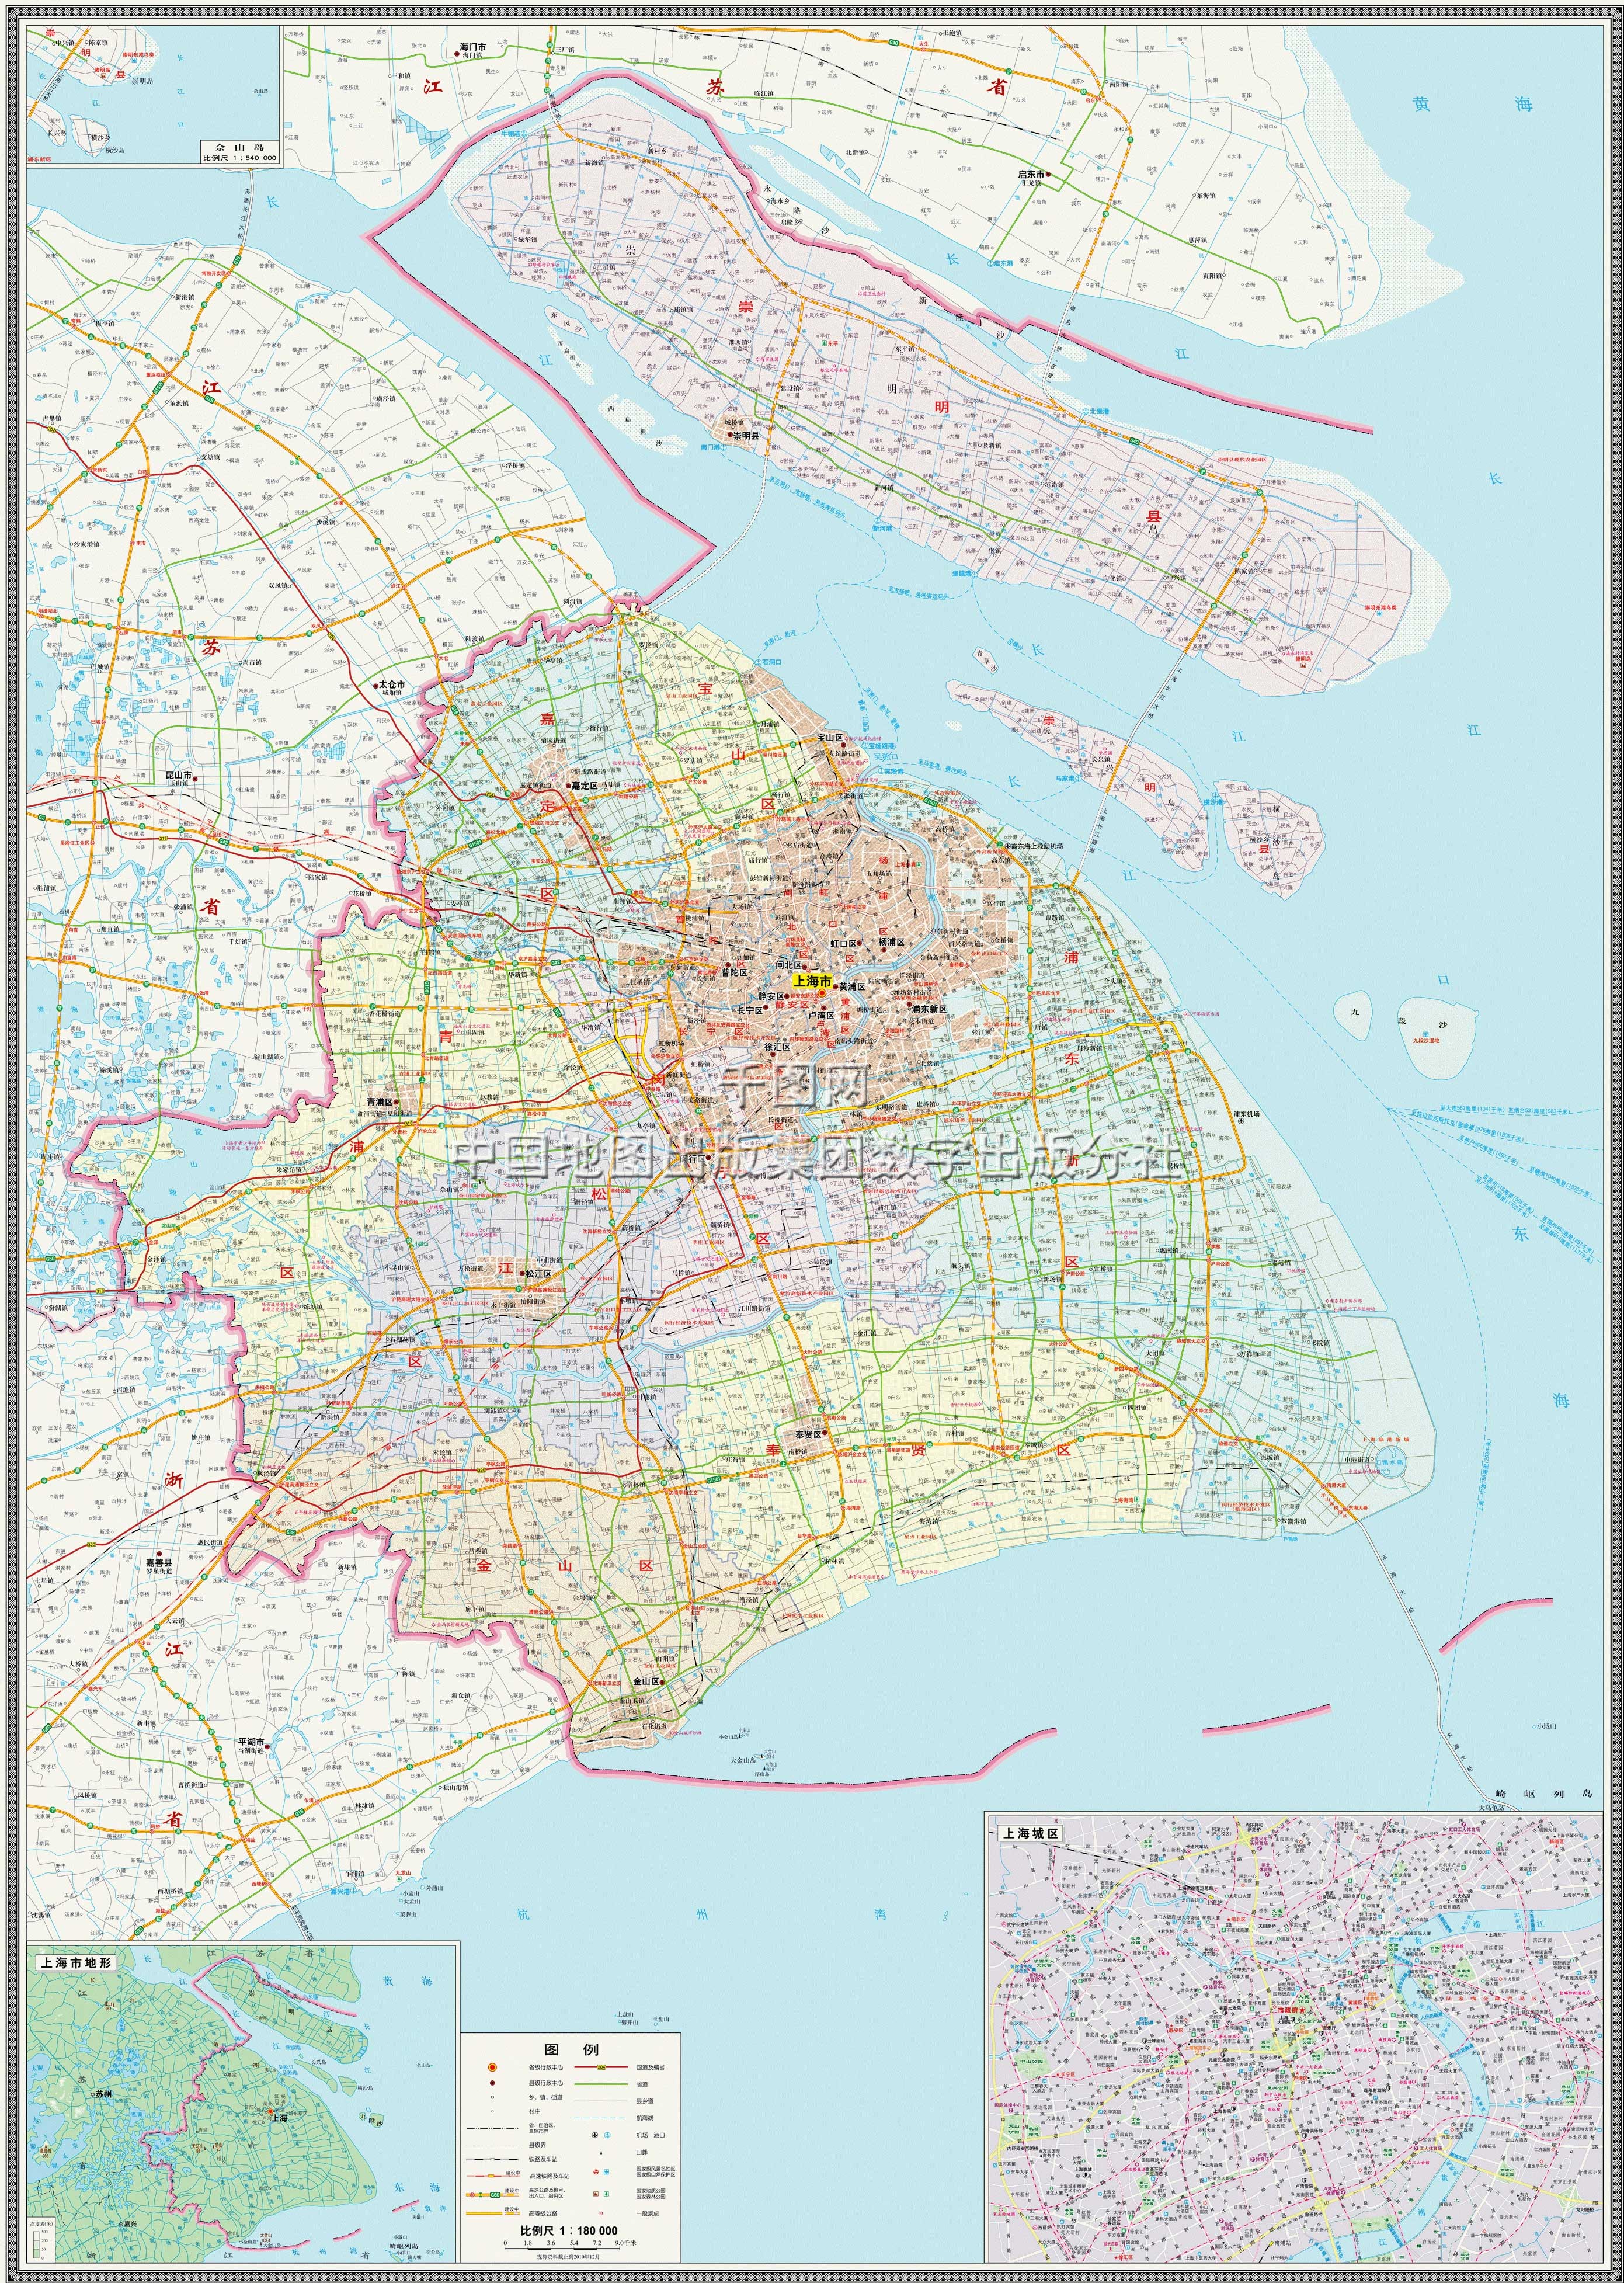 上海地图全图高清版,上海市地图高清全图,上海地图高清版; 东方绿舟图片